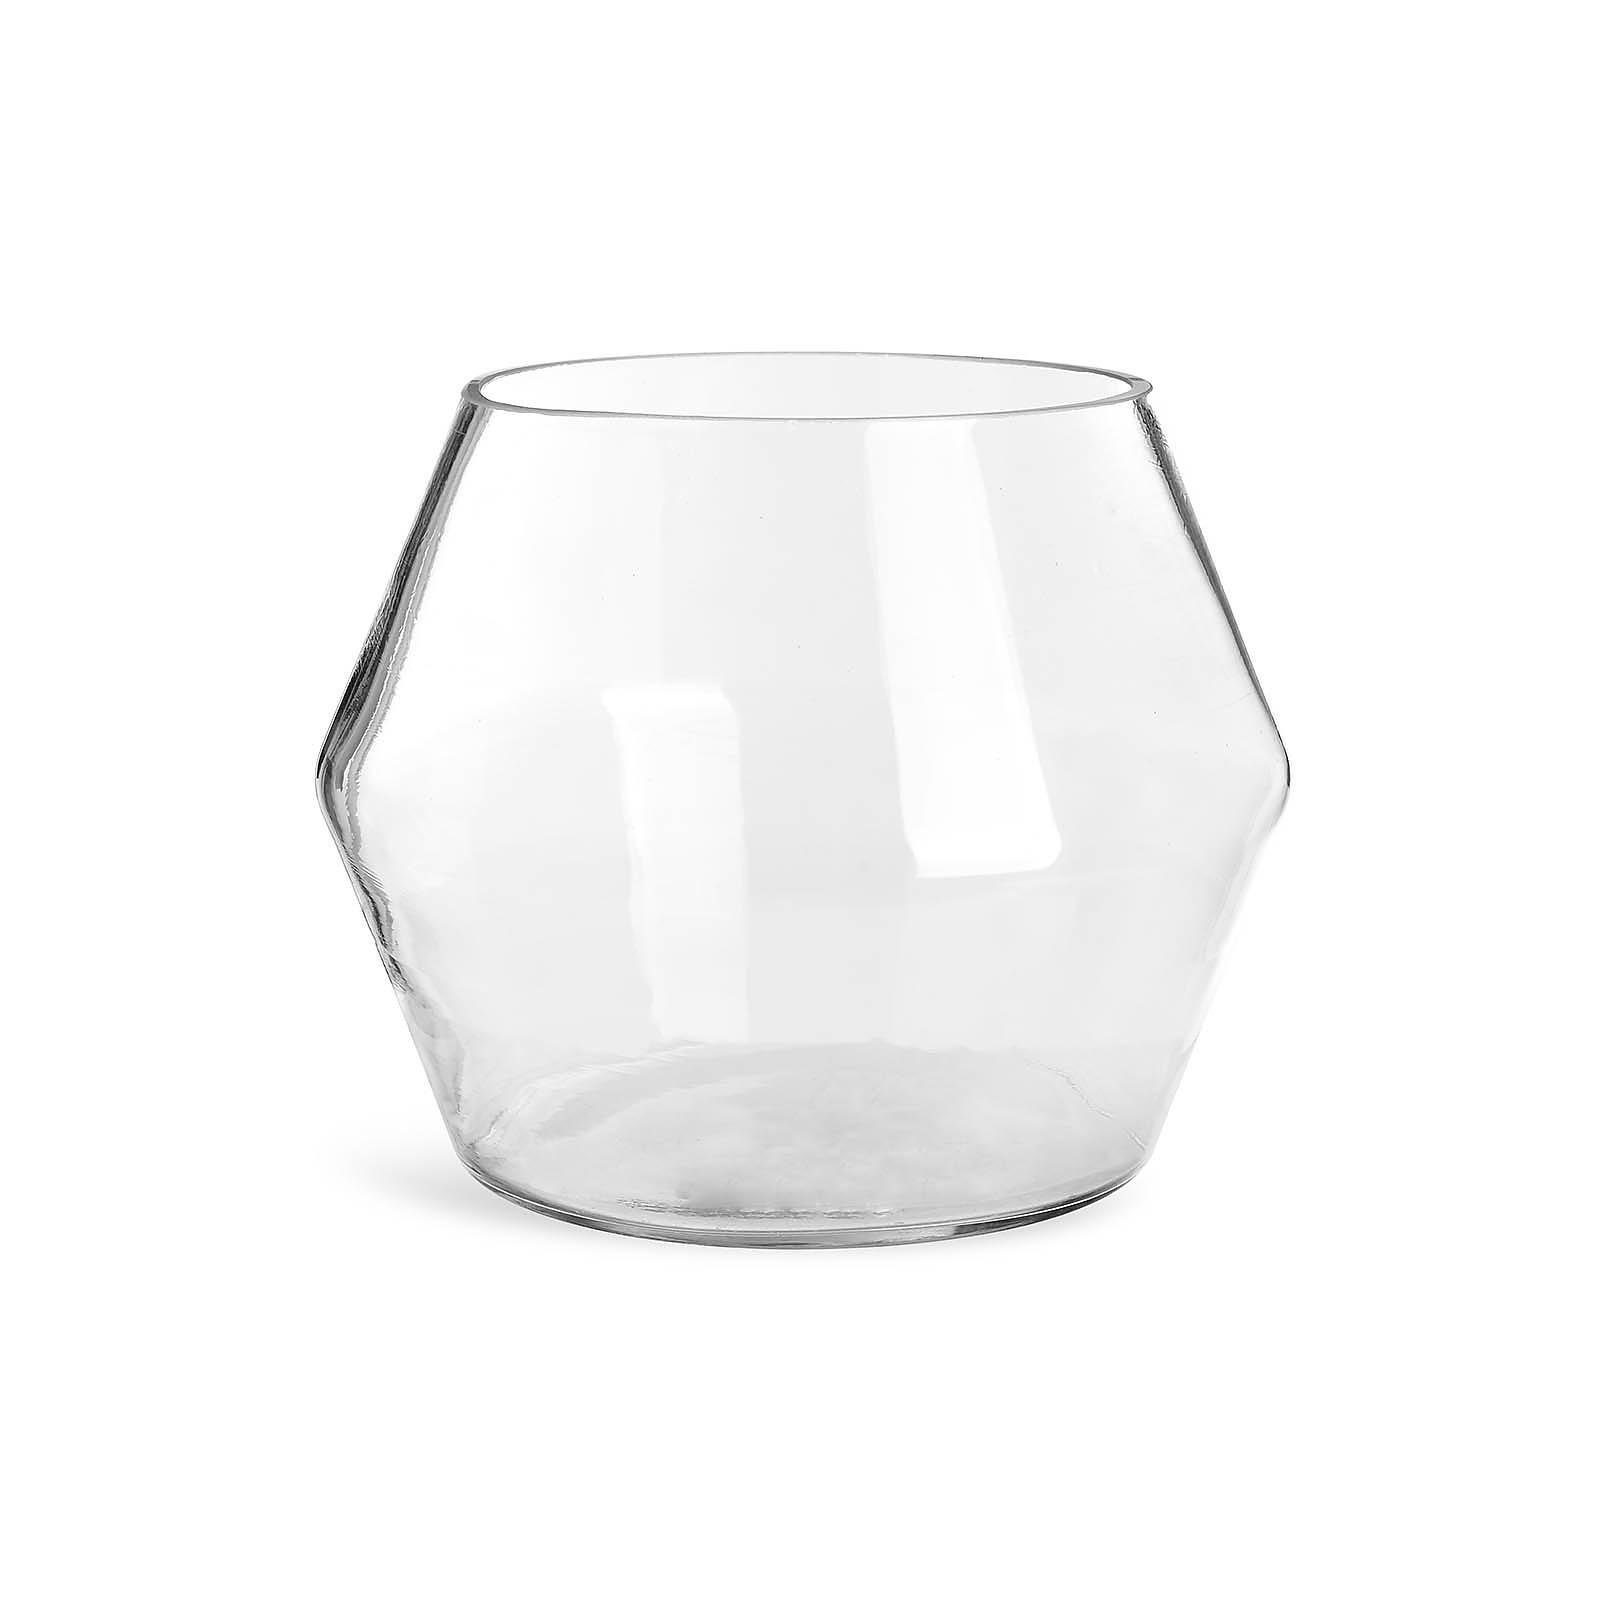 Depot Windlicht »Windlicht Graphic« (1er Pack, 1 Windlicht), aus Glas, Ø 16  Zentimeter, H 20 Zentimeter online kaufen | OTTO